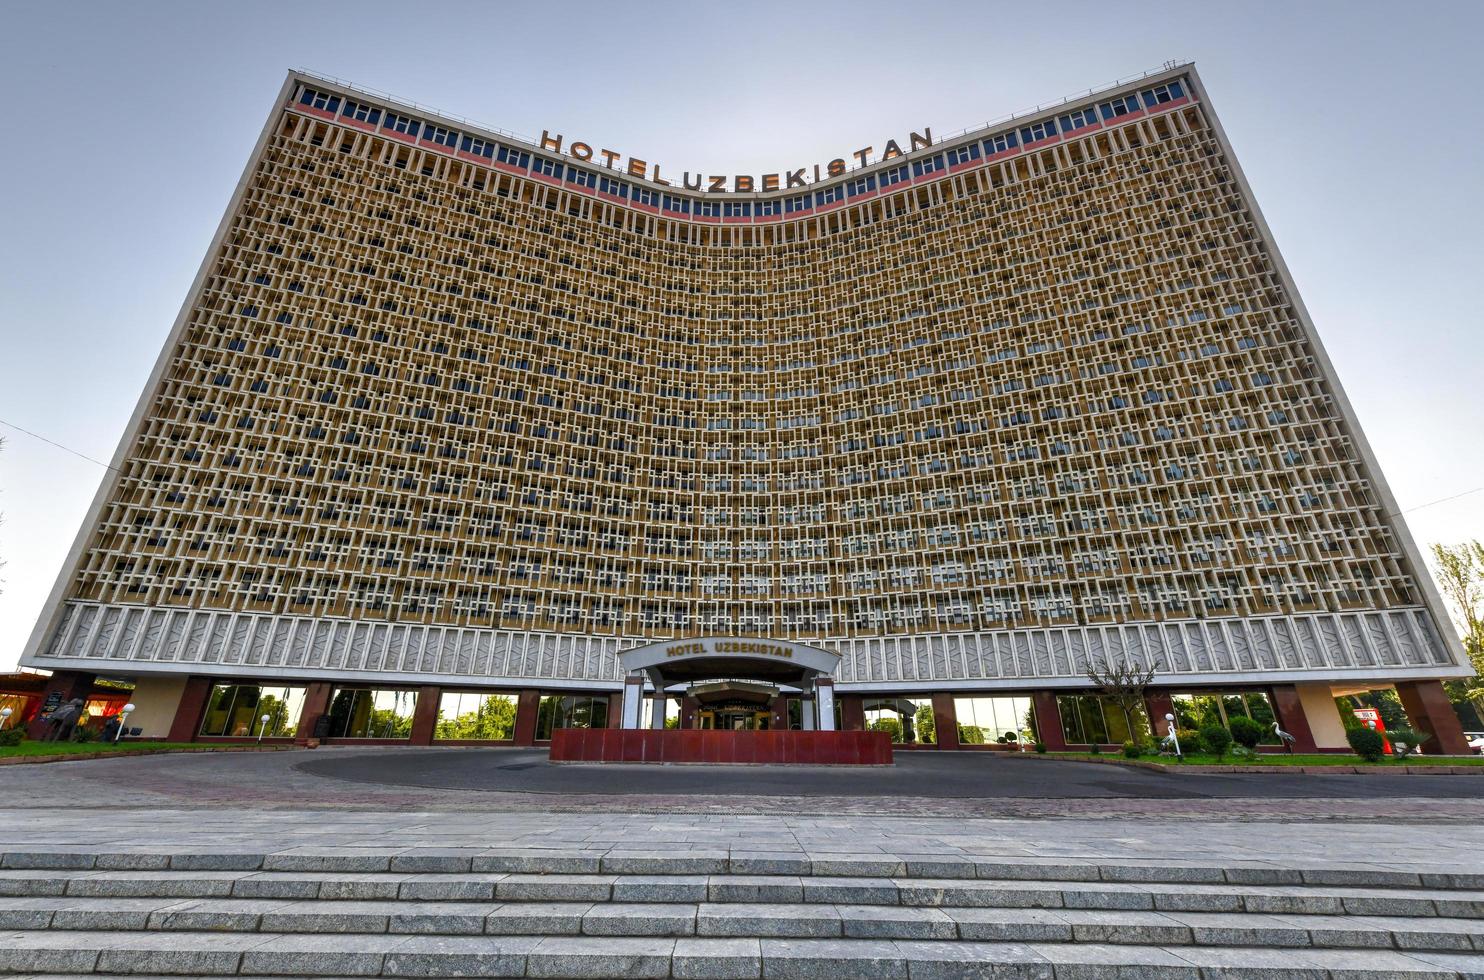 tashkent, uzbequistão - 8 de julho de 2019 - hotel uzbequistão construído em estilo soviético no centro de tashkent. foto